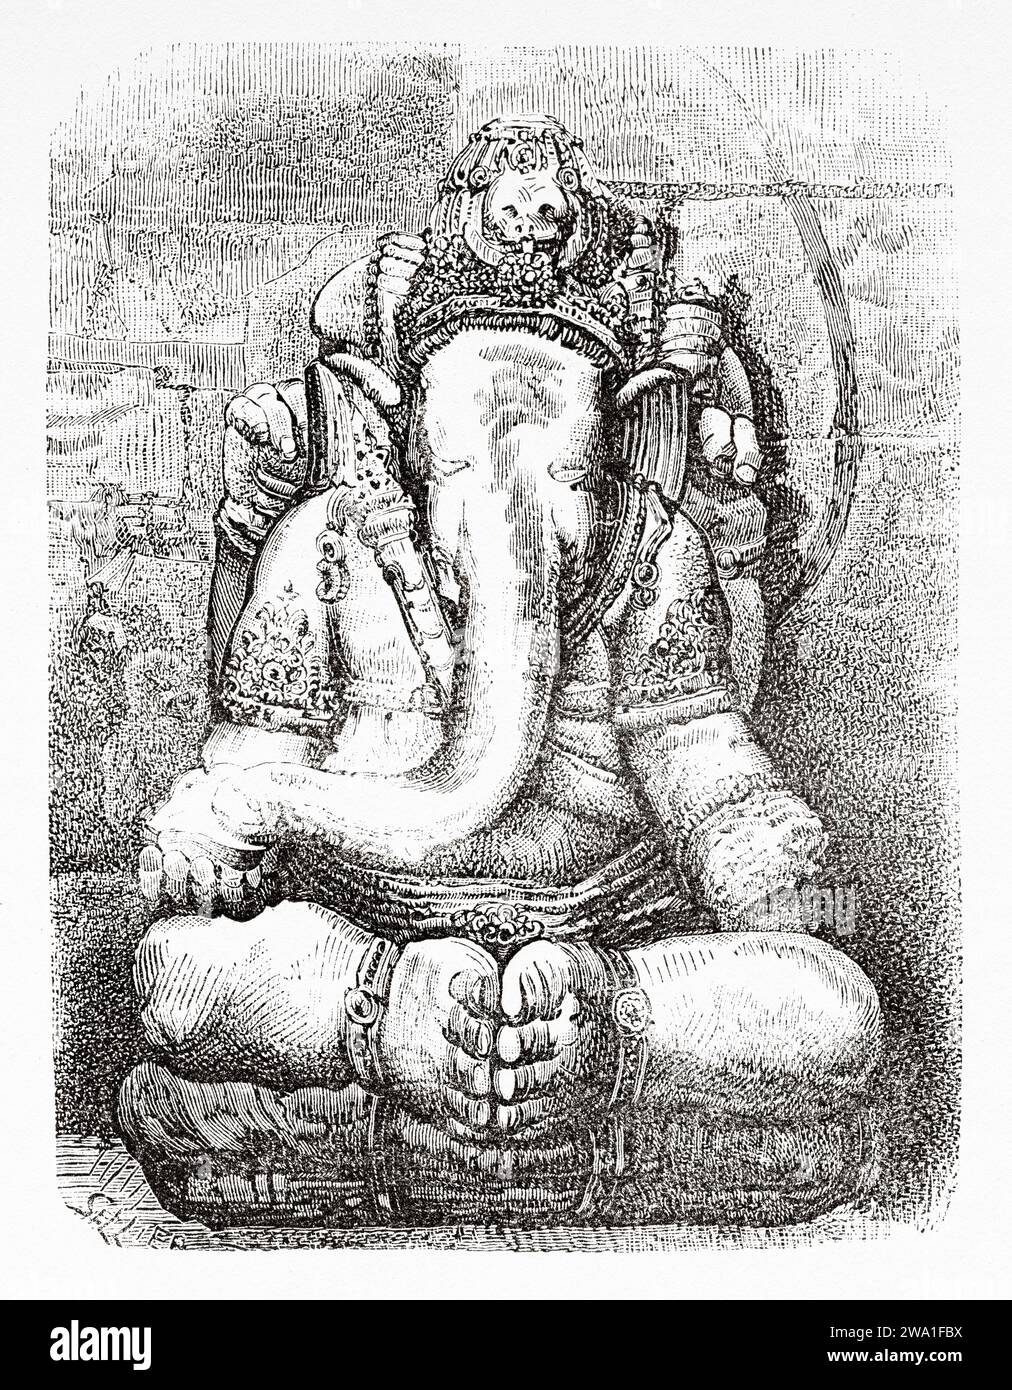 Die große Statue von Shivas Sohn. Ganesha, einer der bekanntesten und am meisten verehrten Gottheiten im Hindu-pantheon und ist der höchste Gott in der Ganapatya-Sekte Java-Insel. Indonesien, Südosten. Sechs Wochen in Java 1879 von Desire Charnay (1828–1915). Alter Stich aus dem 19. Jahrhundert aus Le Tour du Monde 1880 Stockfoto